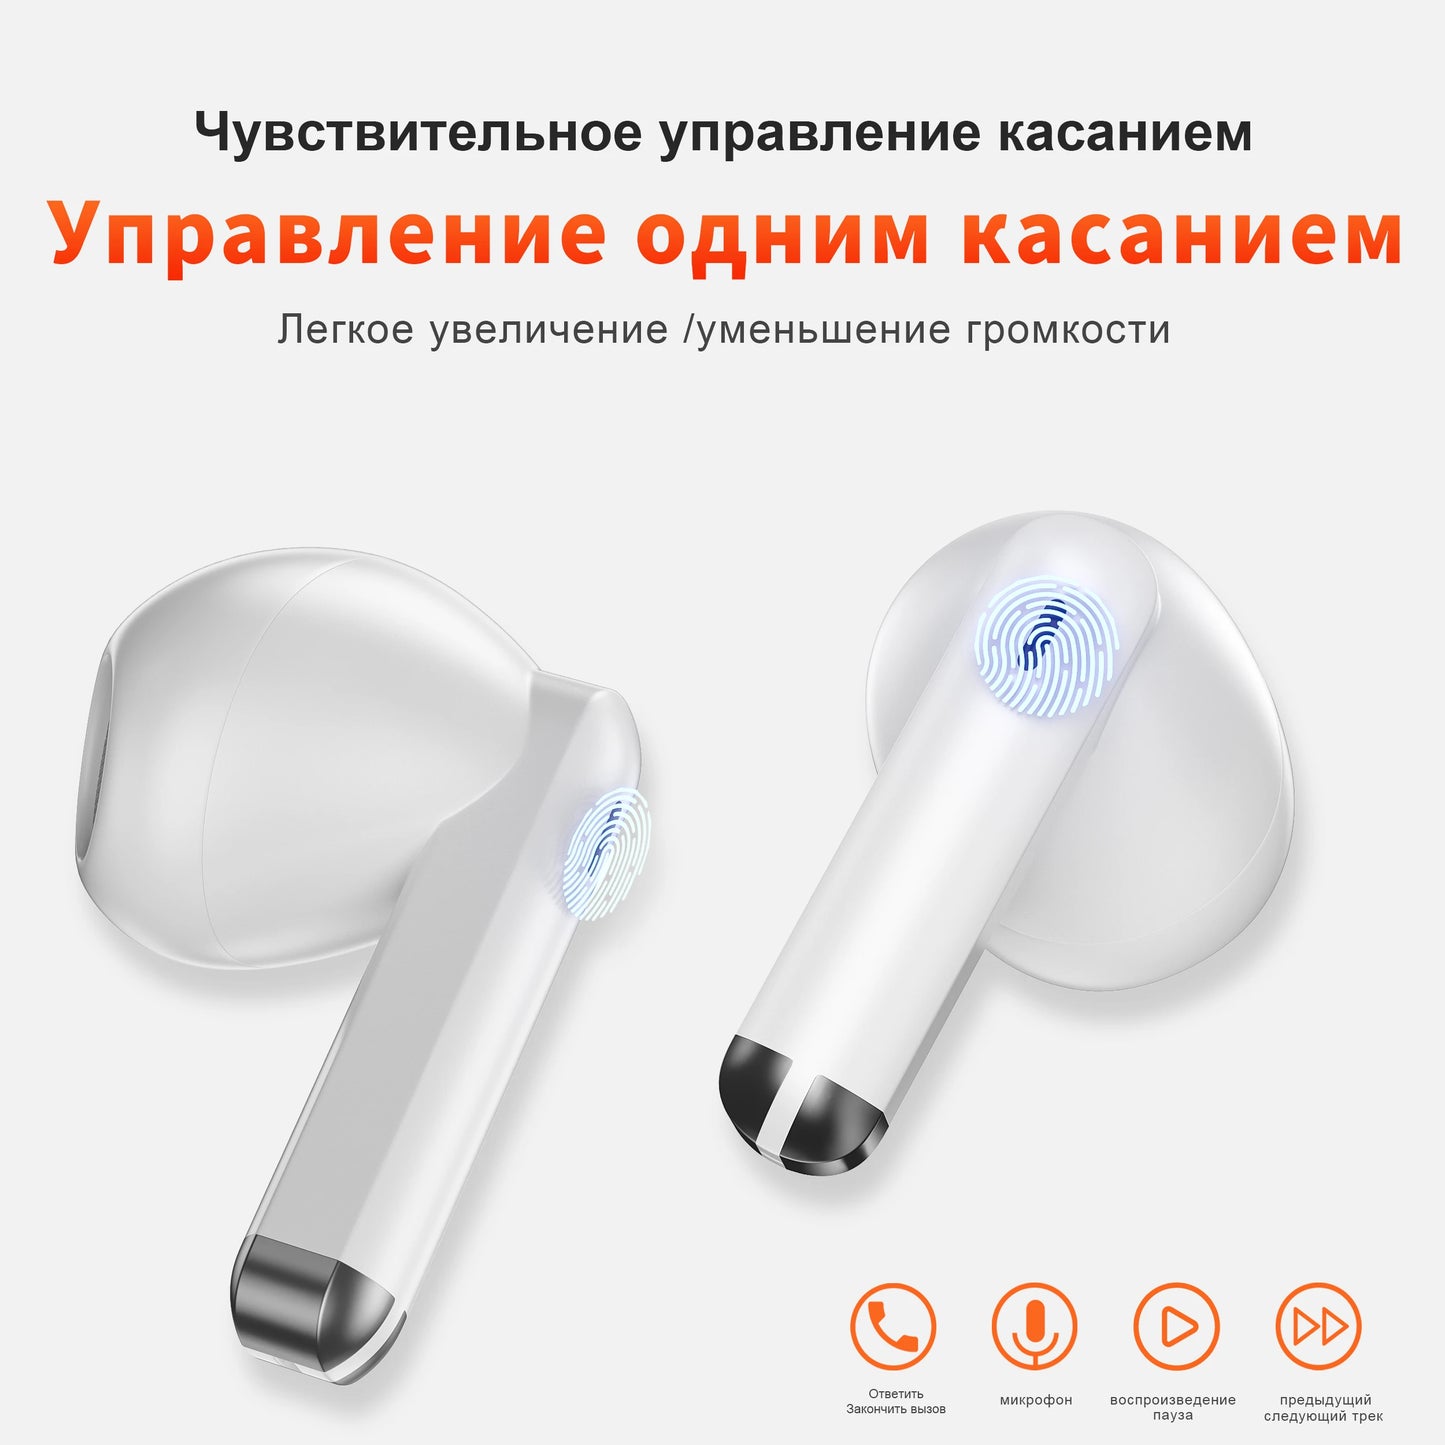 Wireless Earphones  Bluetooth  Microphone HIFI Headphone waterproof Earbud